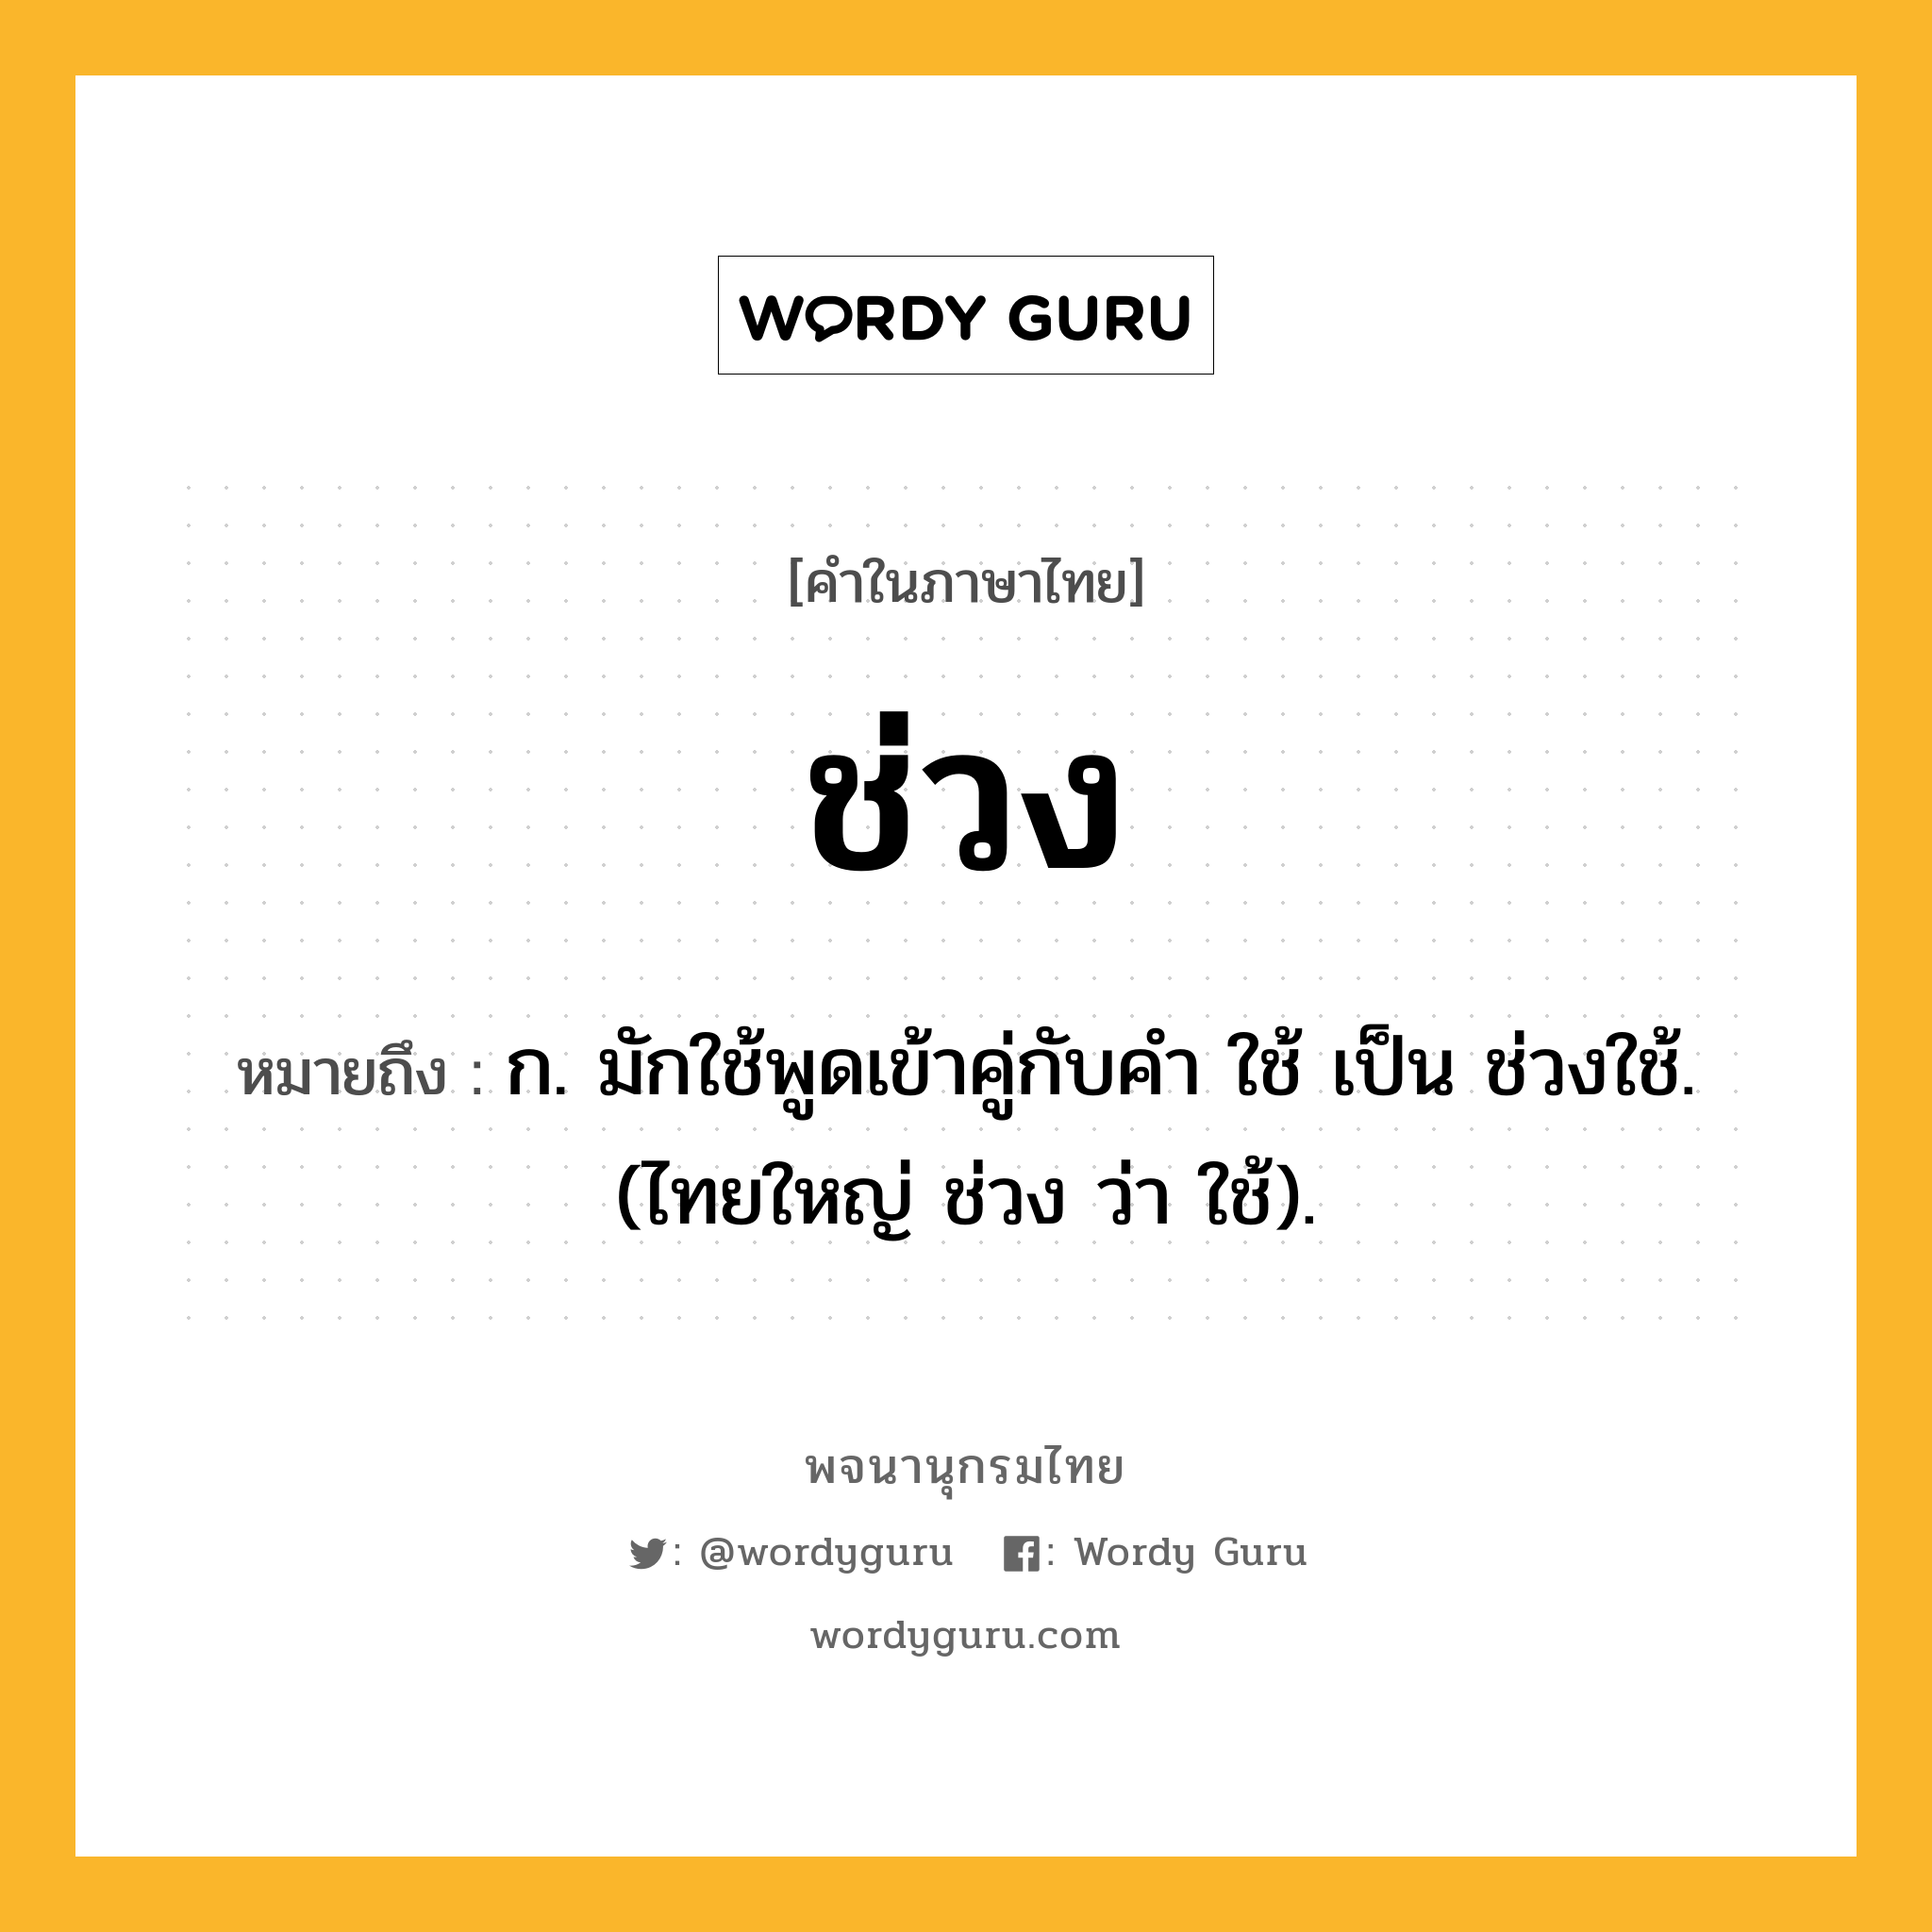 ช่วง ความหมาย หมายถึงอะไร?, คำในภาษาไทย ช่วง หมายถึง ก. มักใช้พูดเข้าคู่กับคํา ใช้ เป็น ช่วงใช้. (ไทยใหญ่ ช่วง ว่า ใช้).